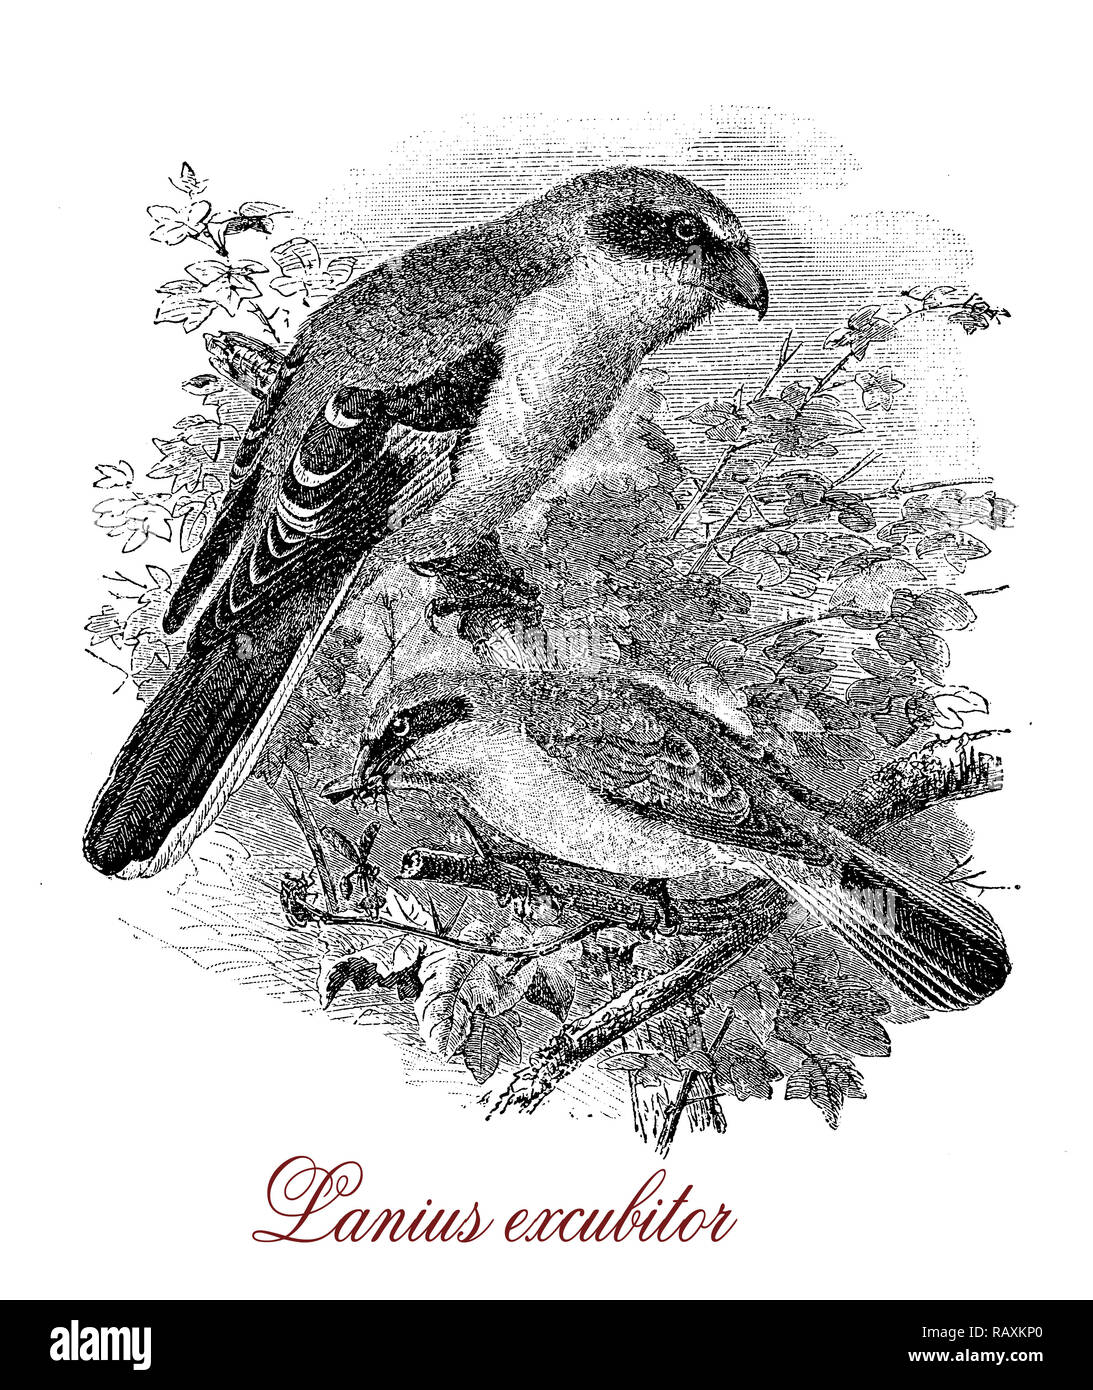 La gravure d'un grand millésime, pie-grièche grand songbird avec gris perlé tête et un masque pour les yeux noirs, et des rongeurs carnivores hunter Banque D'Images